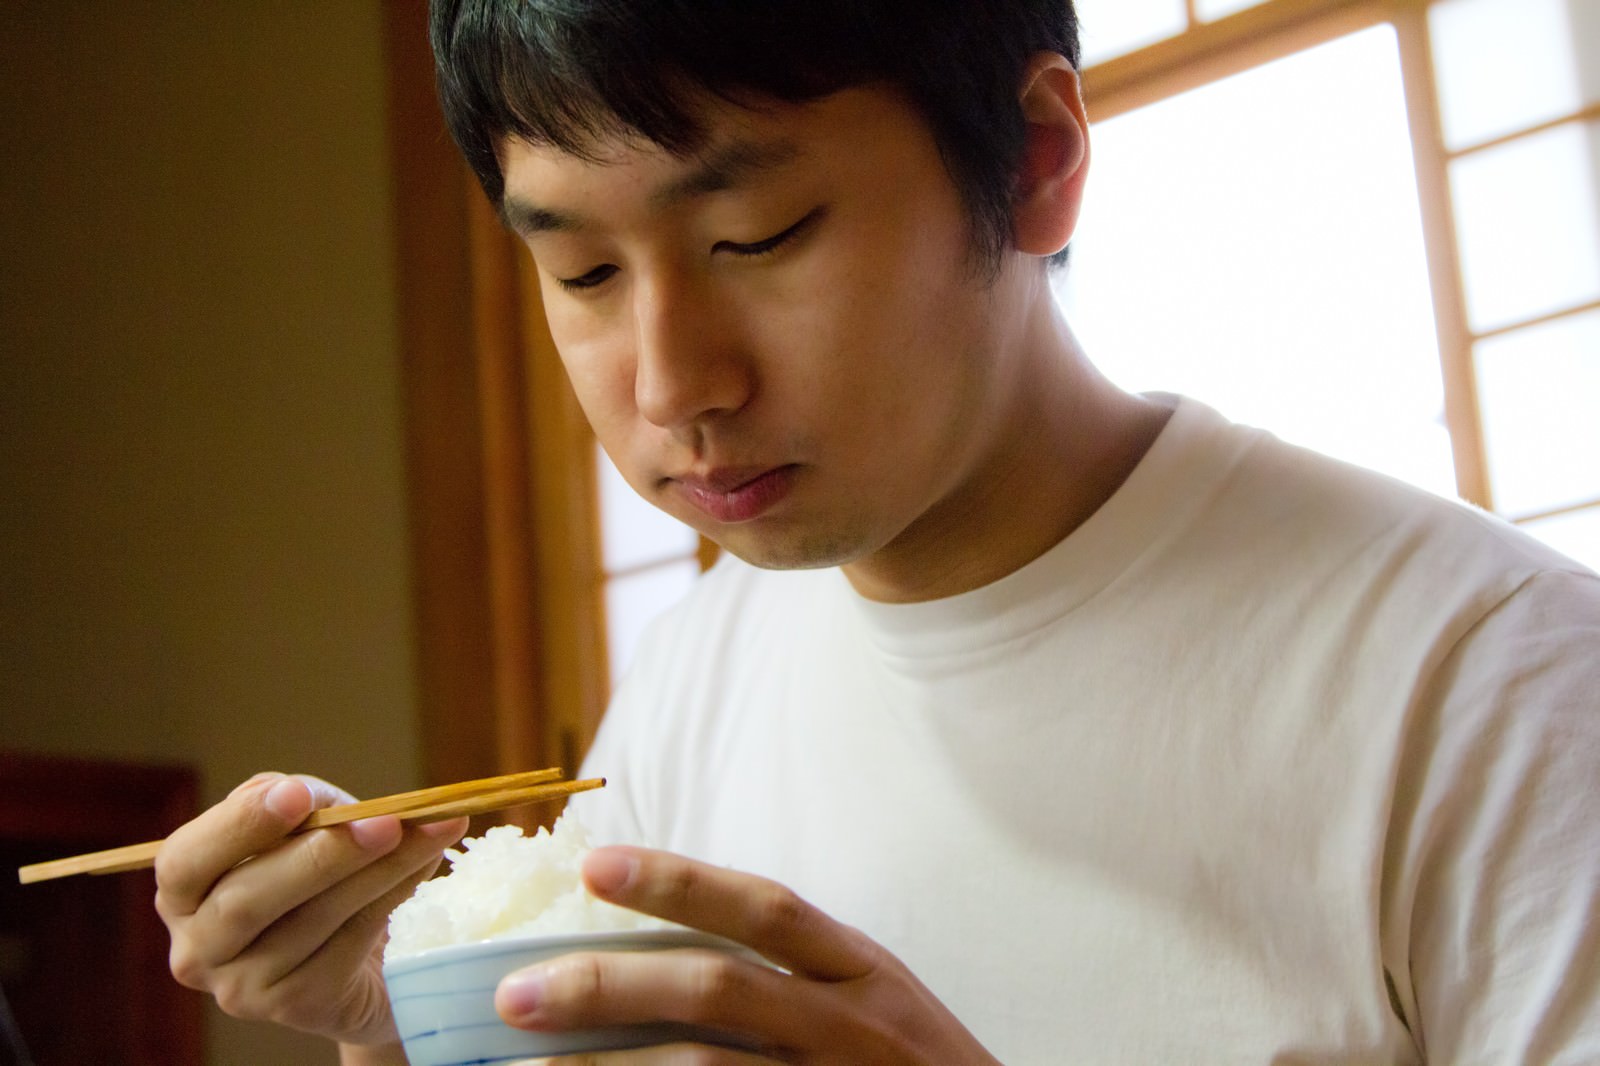 「ご飯をウマウマする男性ご飯をウマウマする男性」［モデル：大川竜弥］のフリー写真素材